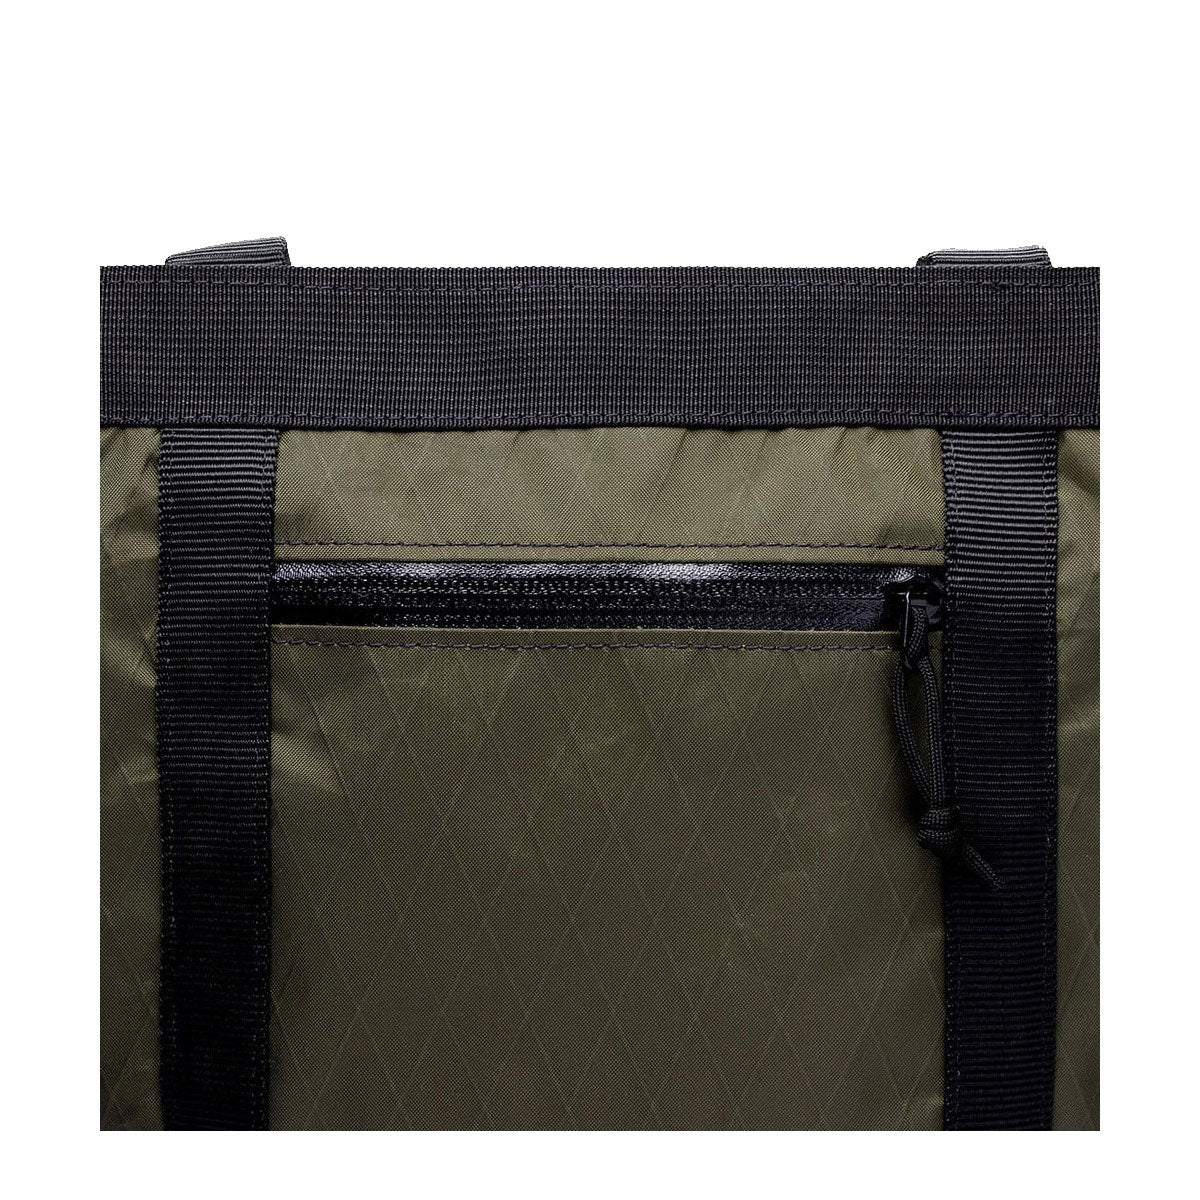 Shop Mission Workshop | US Made Weatherproof Backpack & Messenger Bags